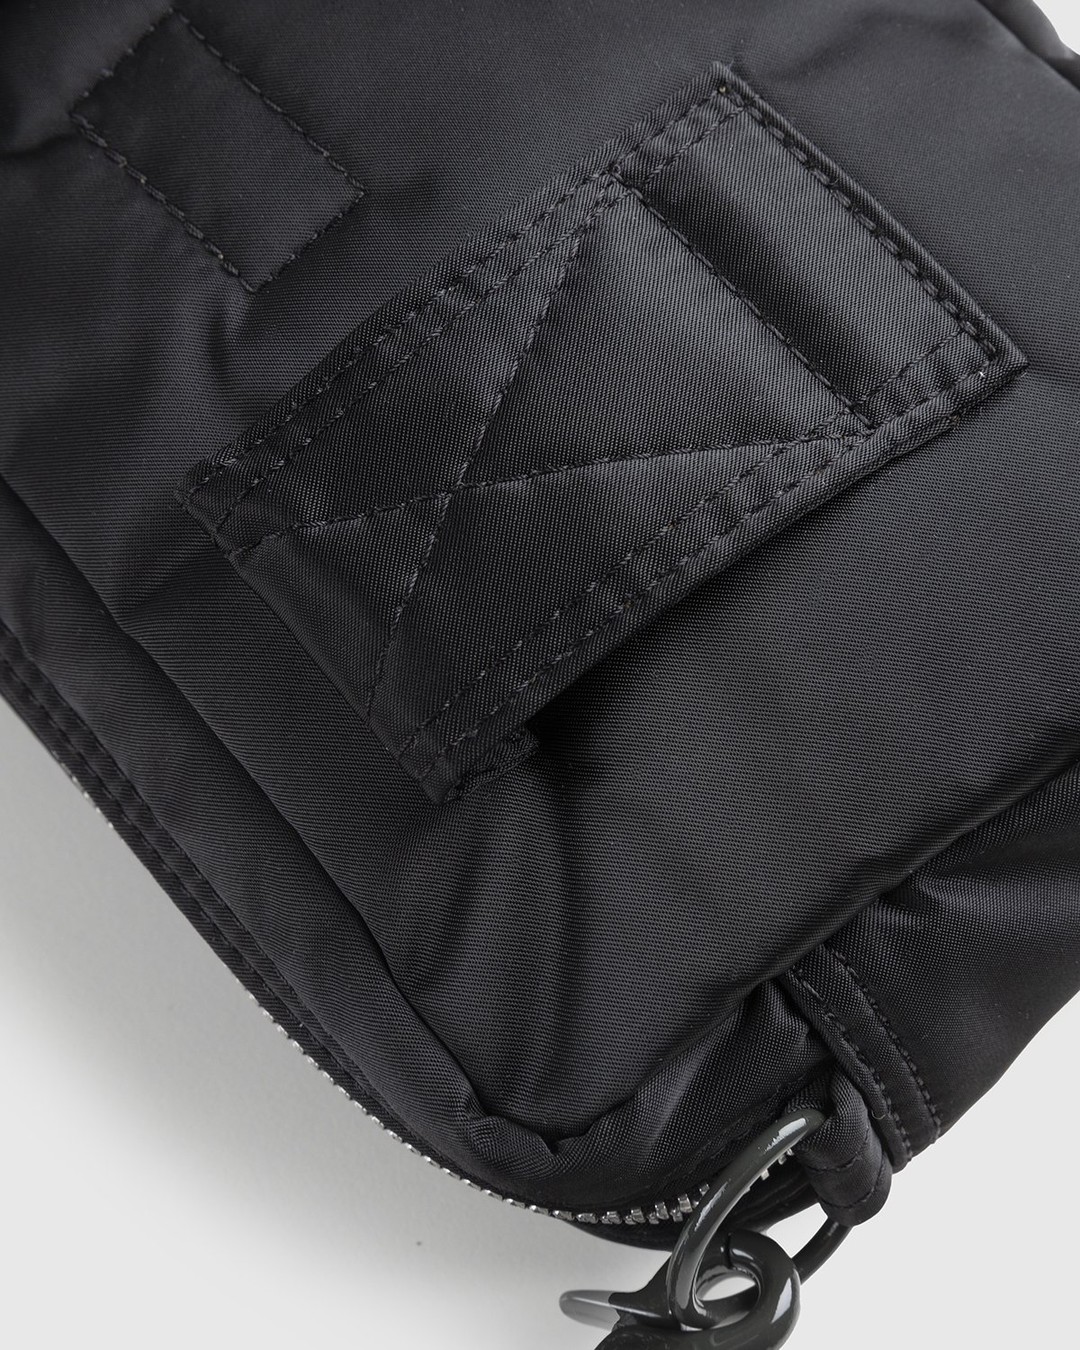 Porter-Yoshida & Co. – Tanker Shoulder Bag Black - Bags - Black - Image 5